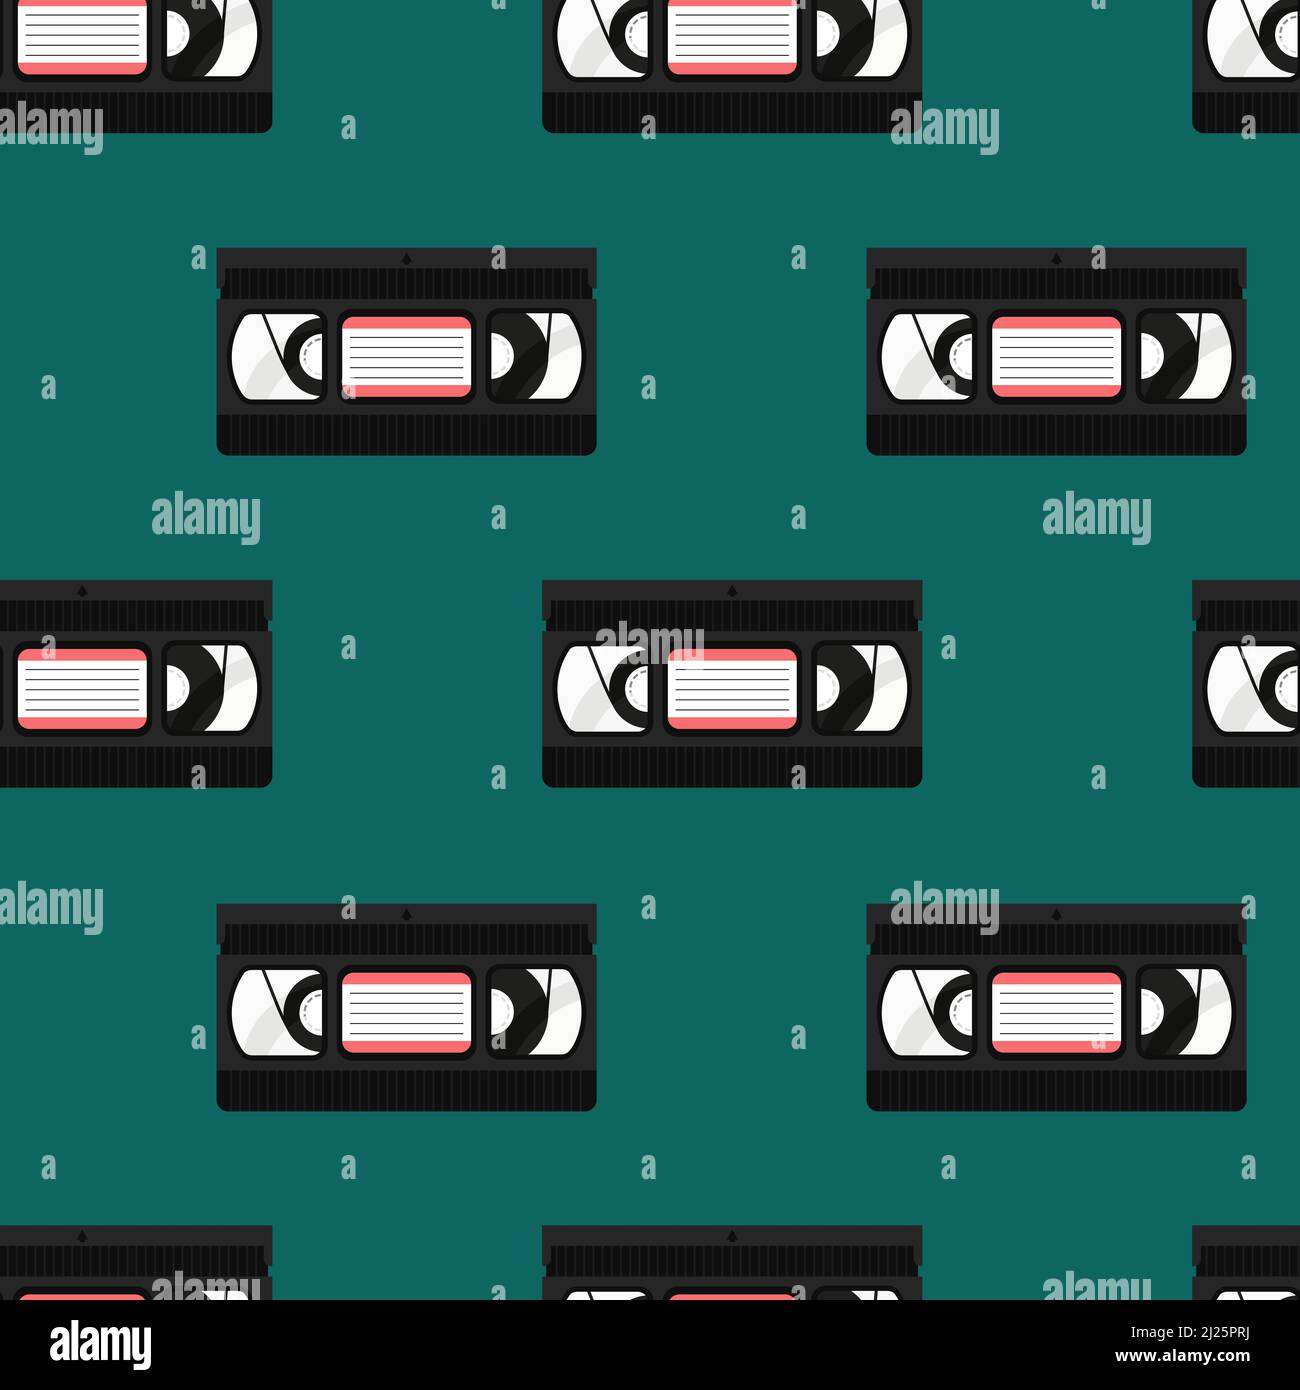 90s VHS-Muster. Retro nahtloser Hintergrund mit Videobändern. VHS-Kassetten isoliert. Vektor flache Illustration für Designs, Hintergrund, Textil, Stoff. Stock Vektor